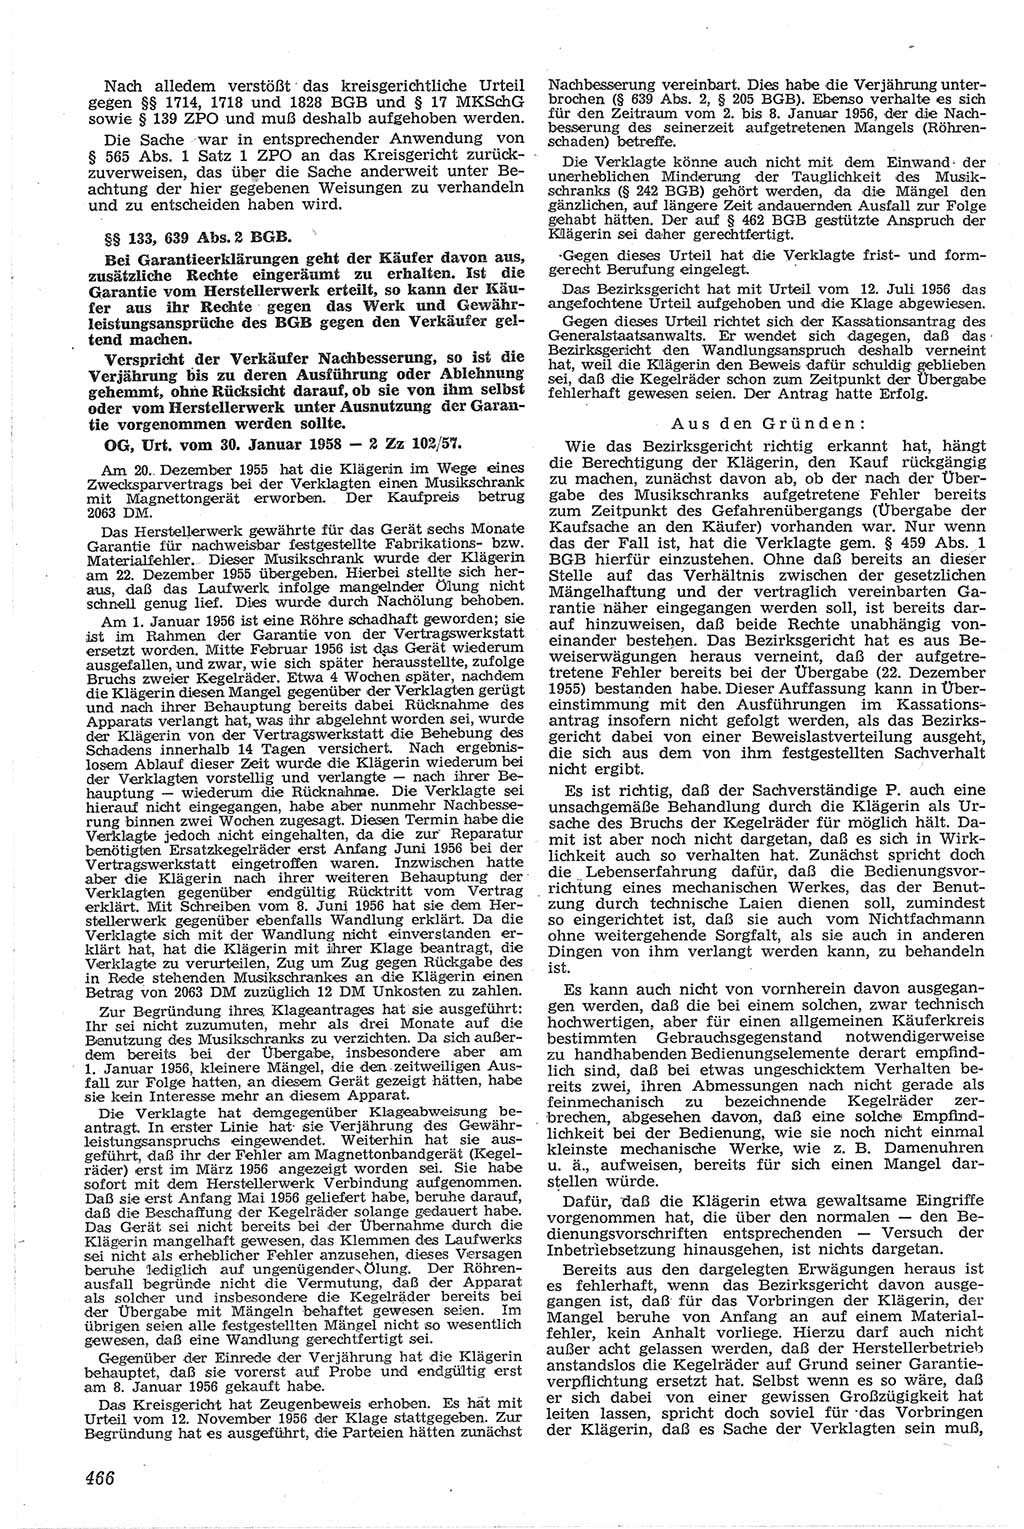 Neue Justiz (NJ), Zeitschrift für Recht und Rechtswissenschaft [Deutsche Demokratische Republik (DDR)], 13. Jahrgang 1959, Seite 466 (NJ DDR 1959, S. 466)